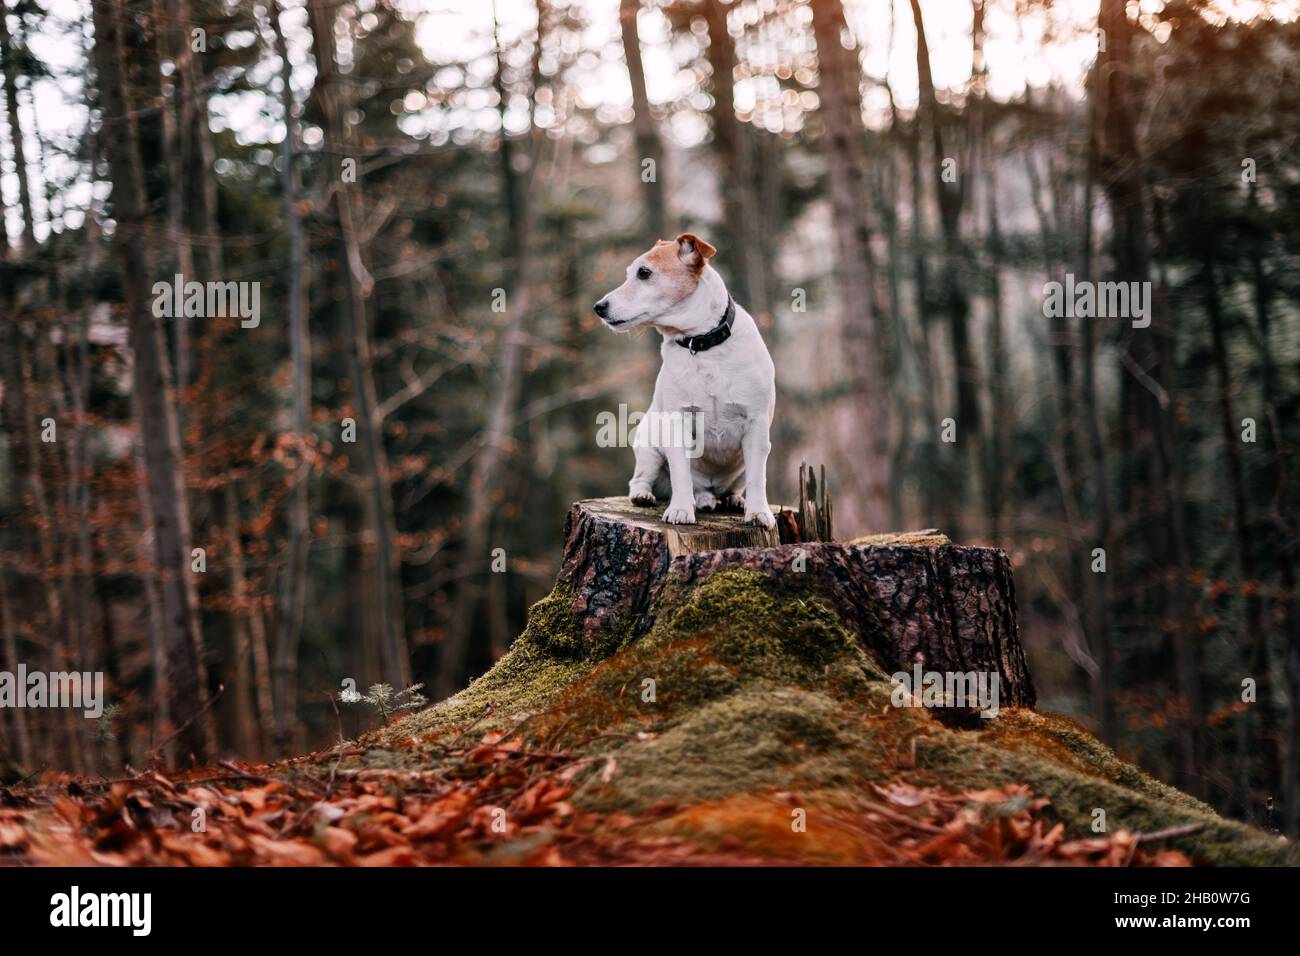 Chien terrier Jack russel sur tige de pin avec mousse verte dans la forêt d'automne.Photographie d'animaux et de la nature Banque D'Images